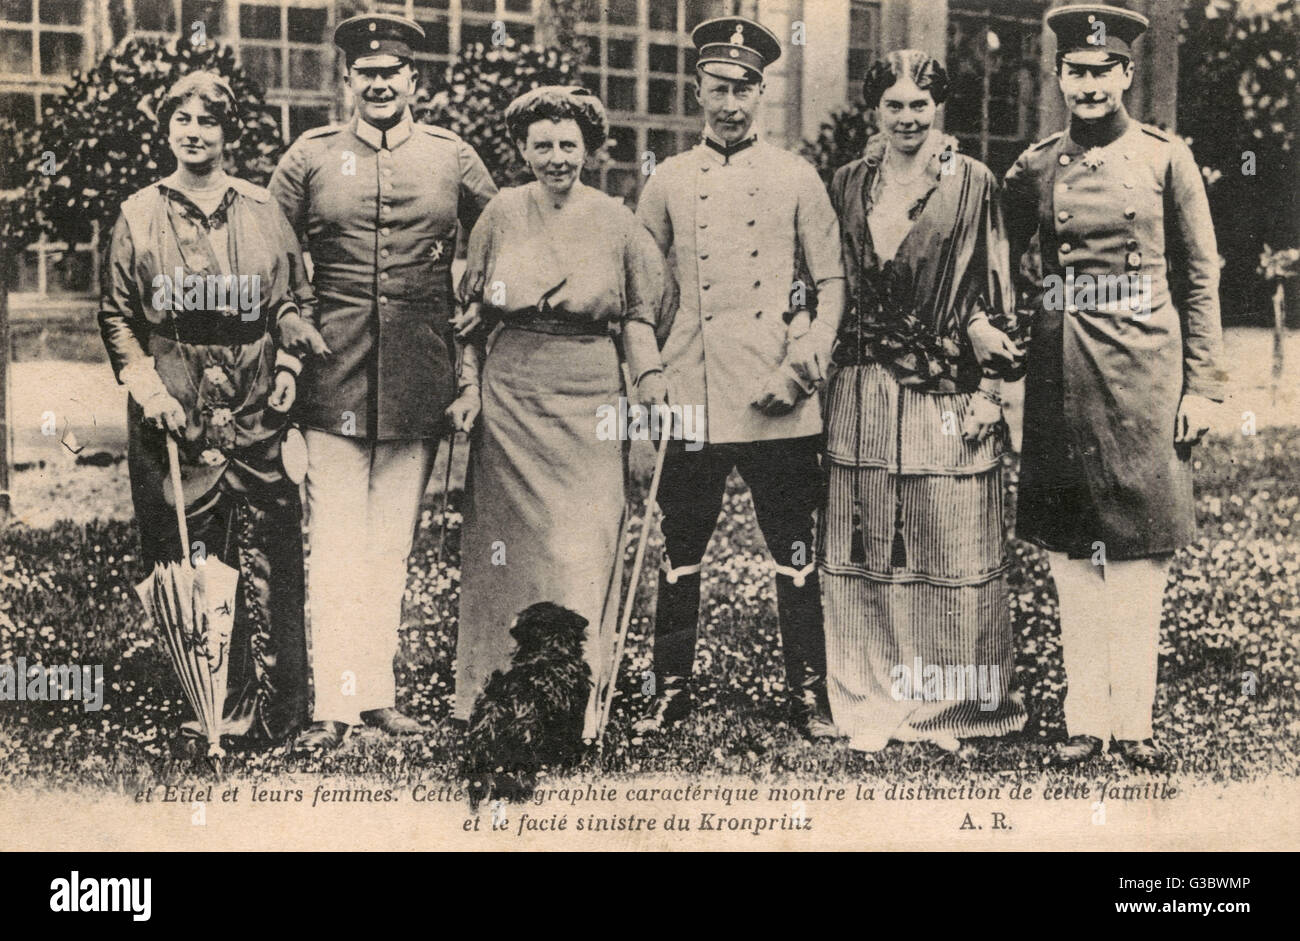 Tres hijos del Kaiser Wilhelm II retratada con sus esposas en 1914: (l a r)la Princesa Alexandra Victoria de Schleswig-Holstein-Sonderburg-Gl&#x23AF38B5;rg (887-1957), esposa de August Wilhelm, Eitel Friedrich (1883-1942) y su esposa, la Duquesa Sophia Charlotte Foto de stock